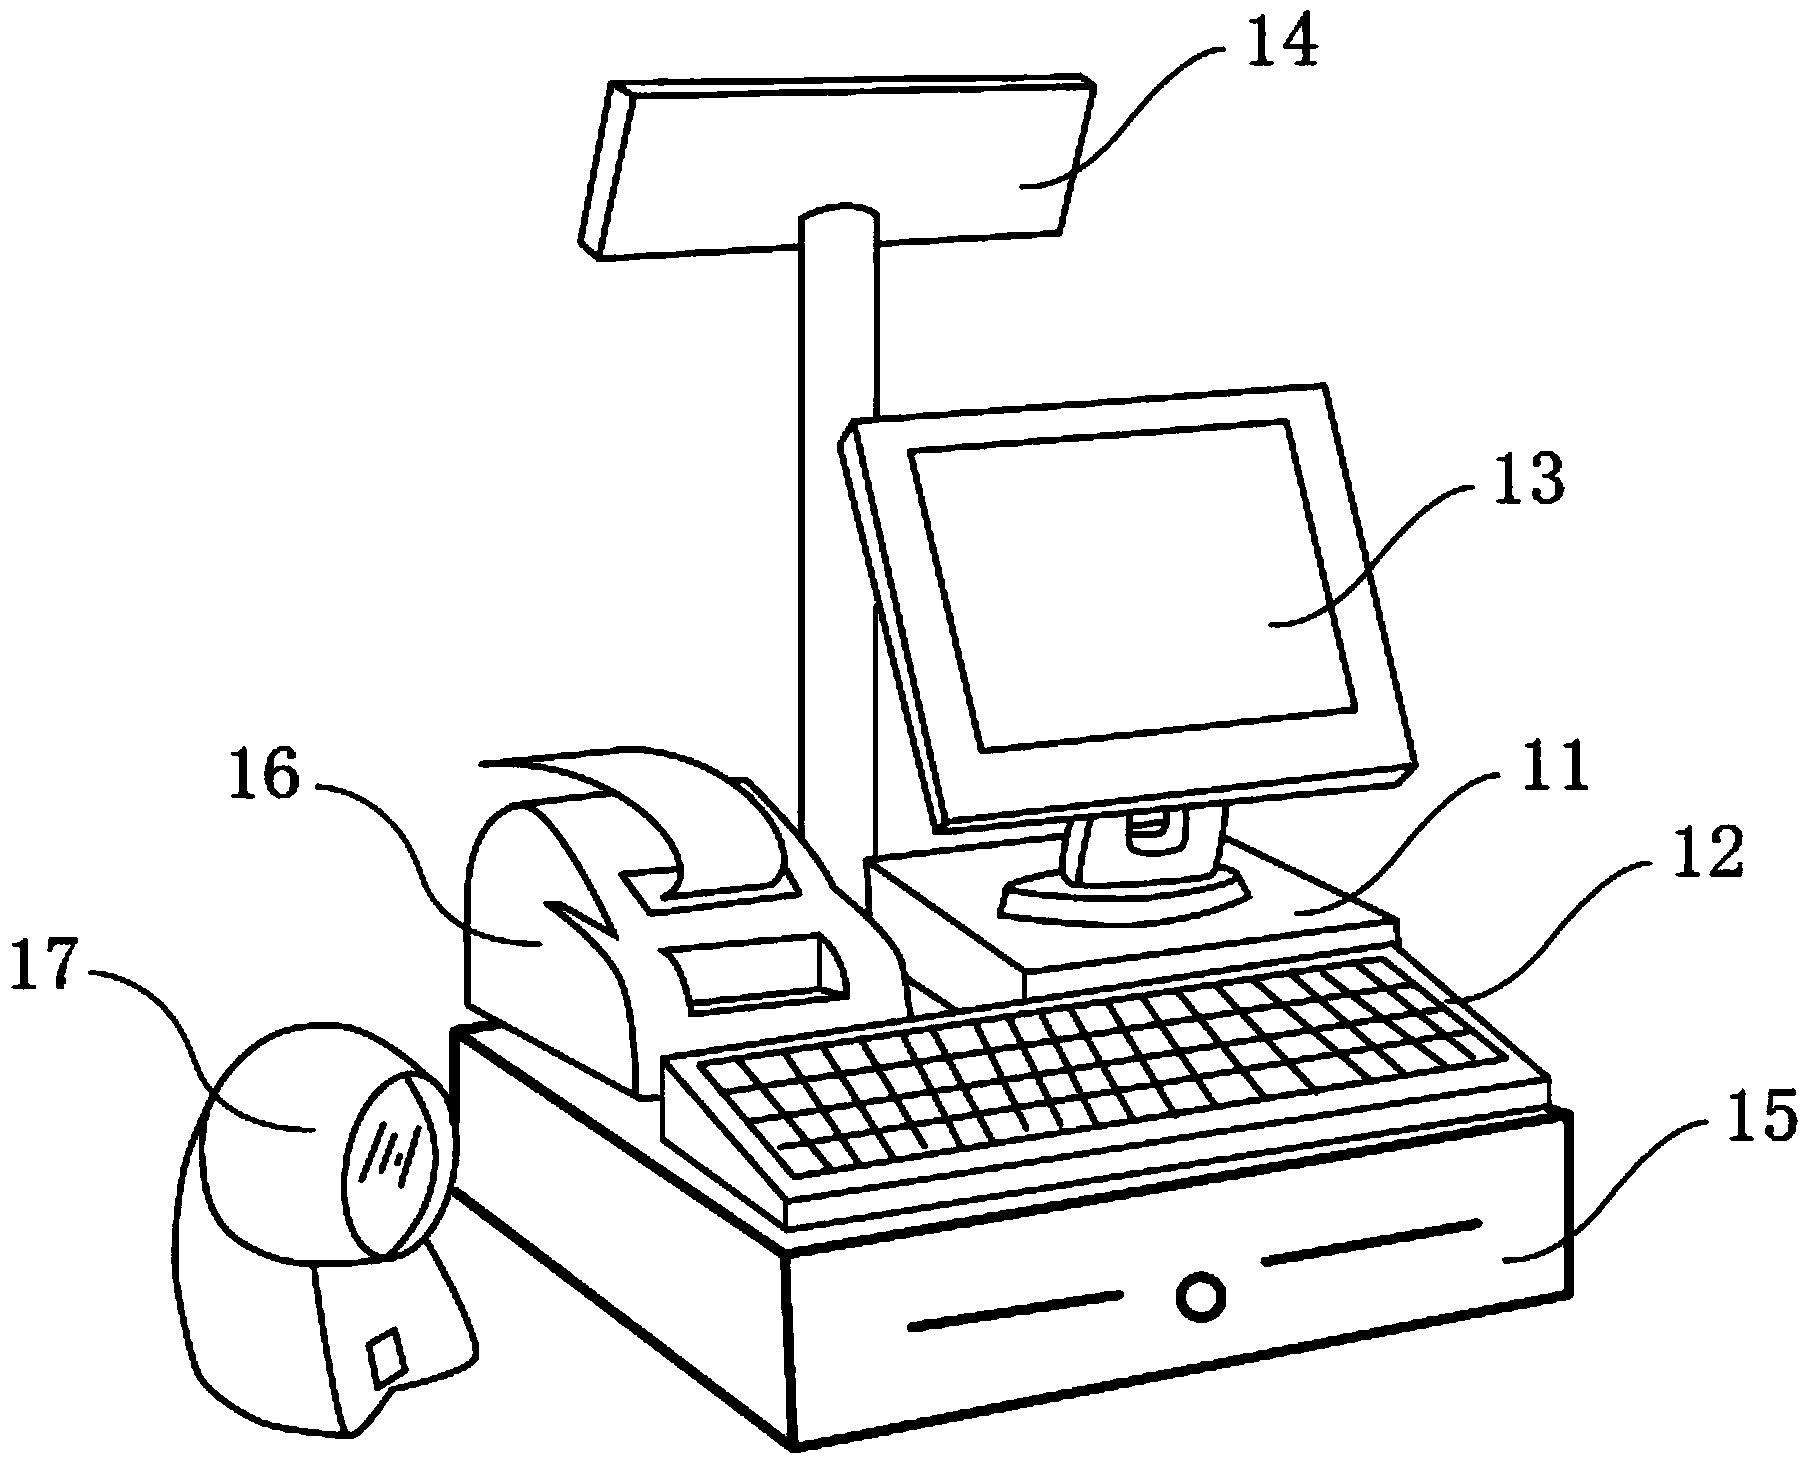 Cash register based on tablet personal computer